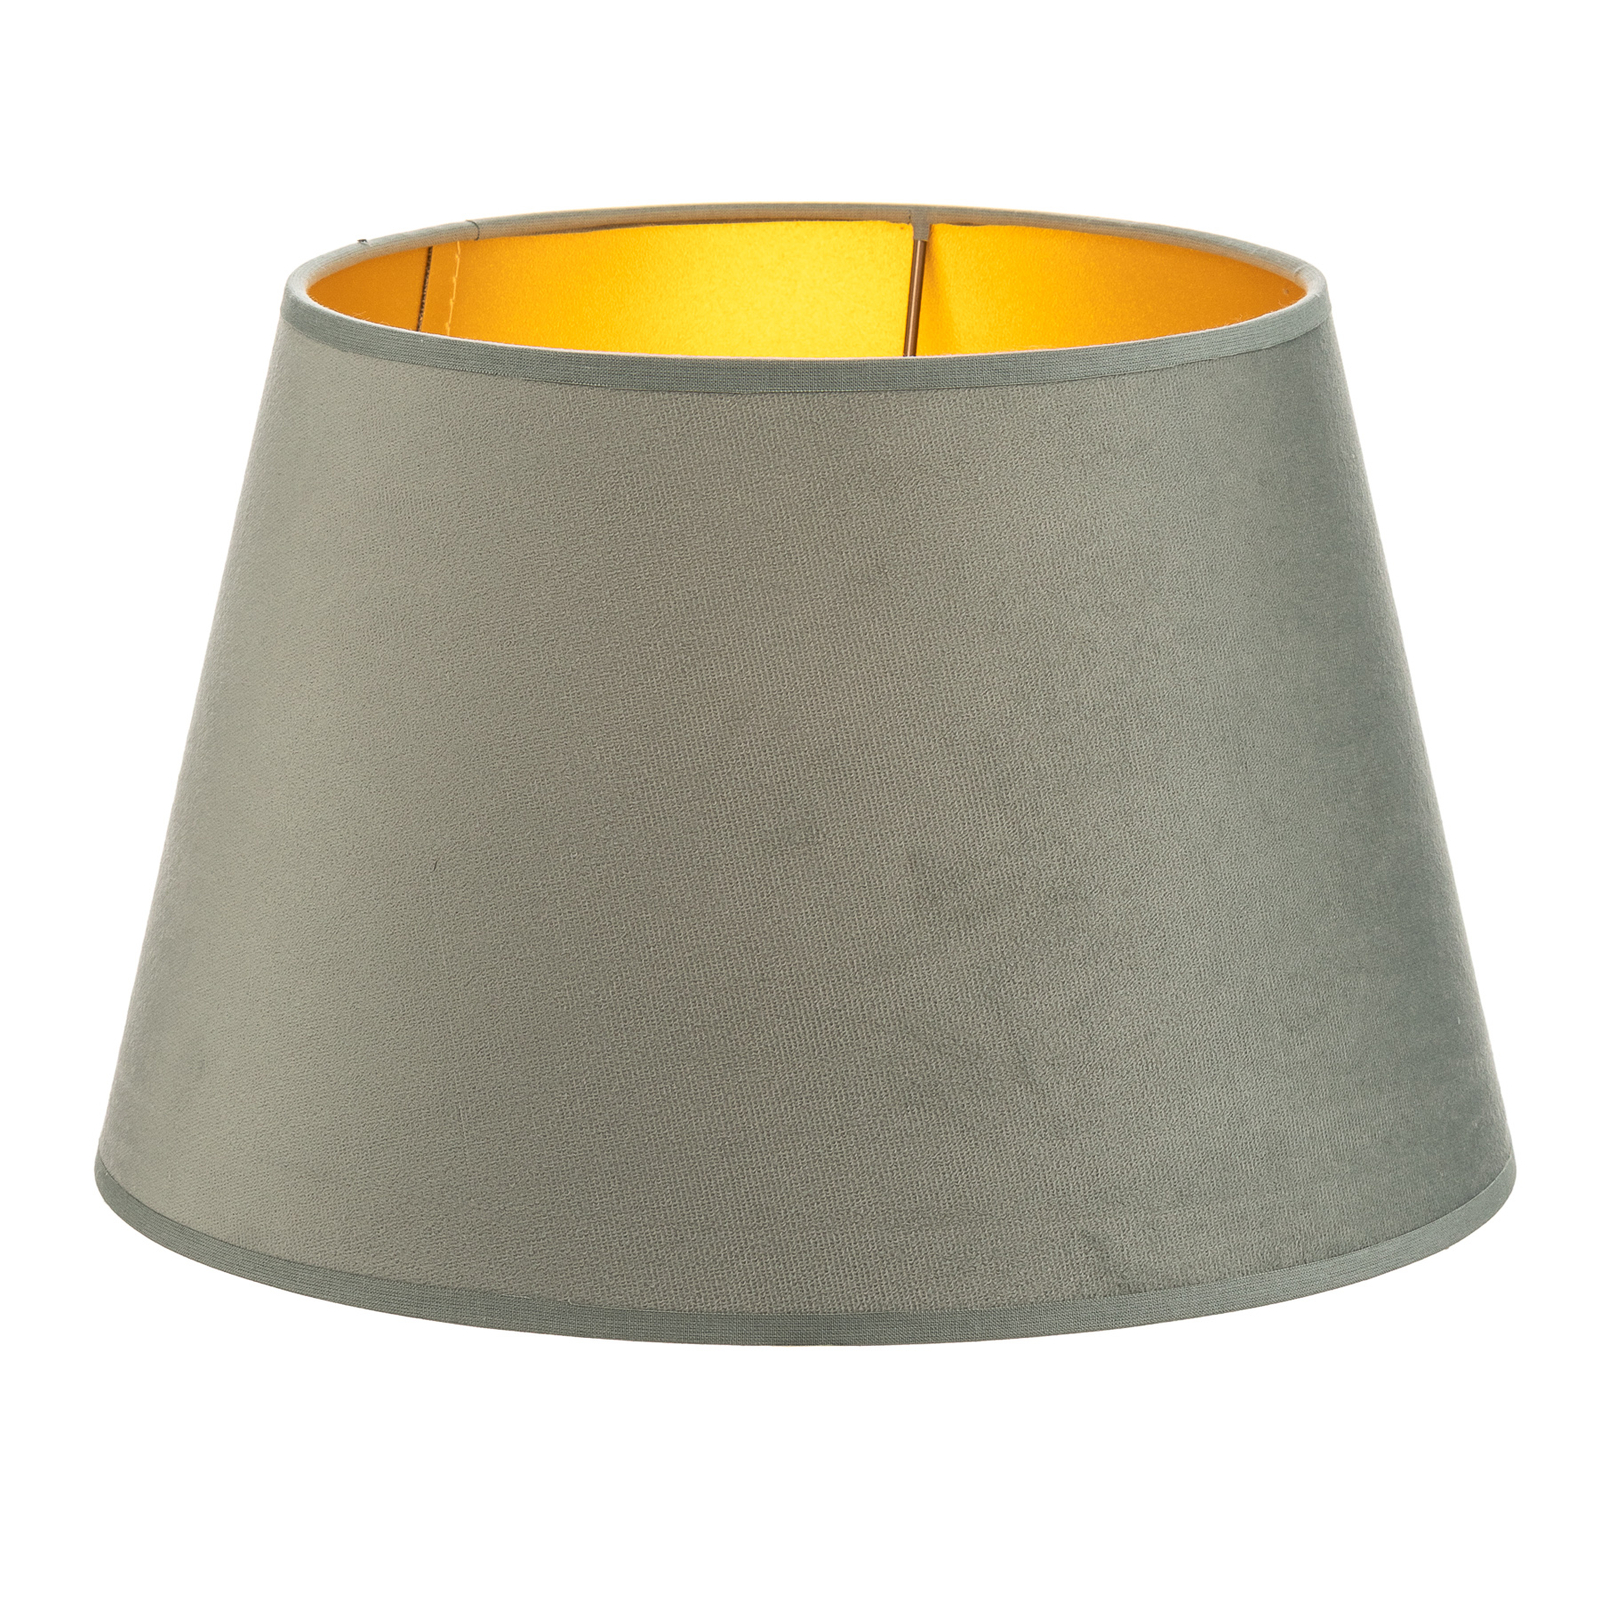 Lampskärm Cone höjd, 18 cm, mintgrön/guld